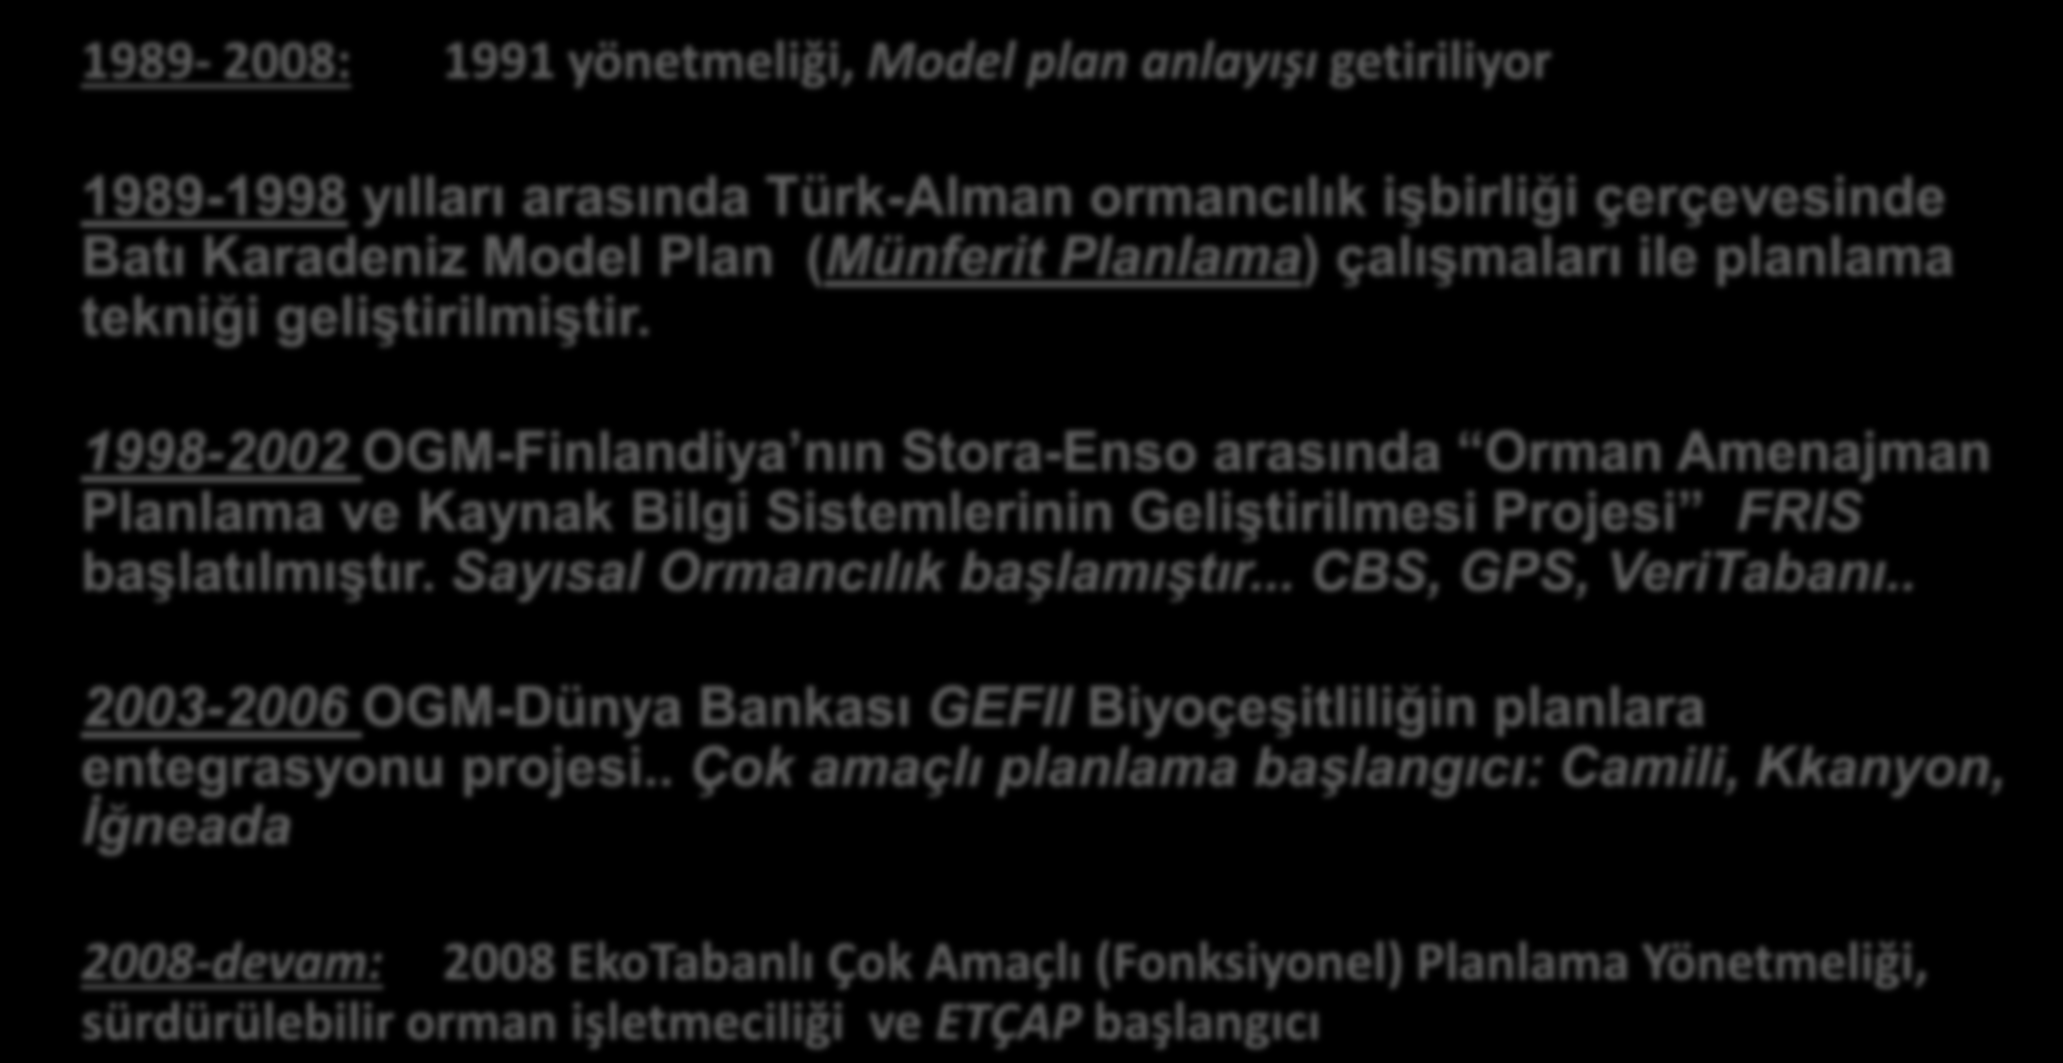 Amenajmanın Tarihçesi -III Mehmet Demirci 1989-2008: 1991 yönetmeliği, Model plan anlayışı getiriliyor 1989-1998 yılları arasında Türk-Alman ormancılık işbirliği çerçevesinde Batı Karadeniz Model